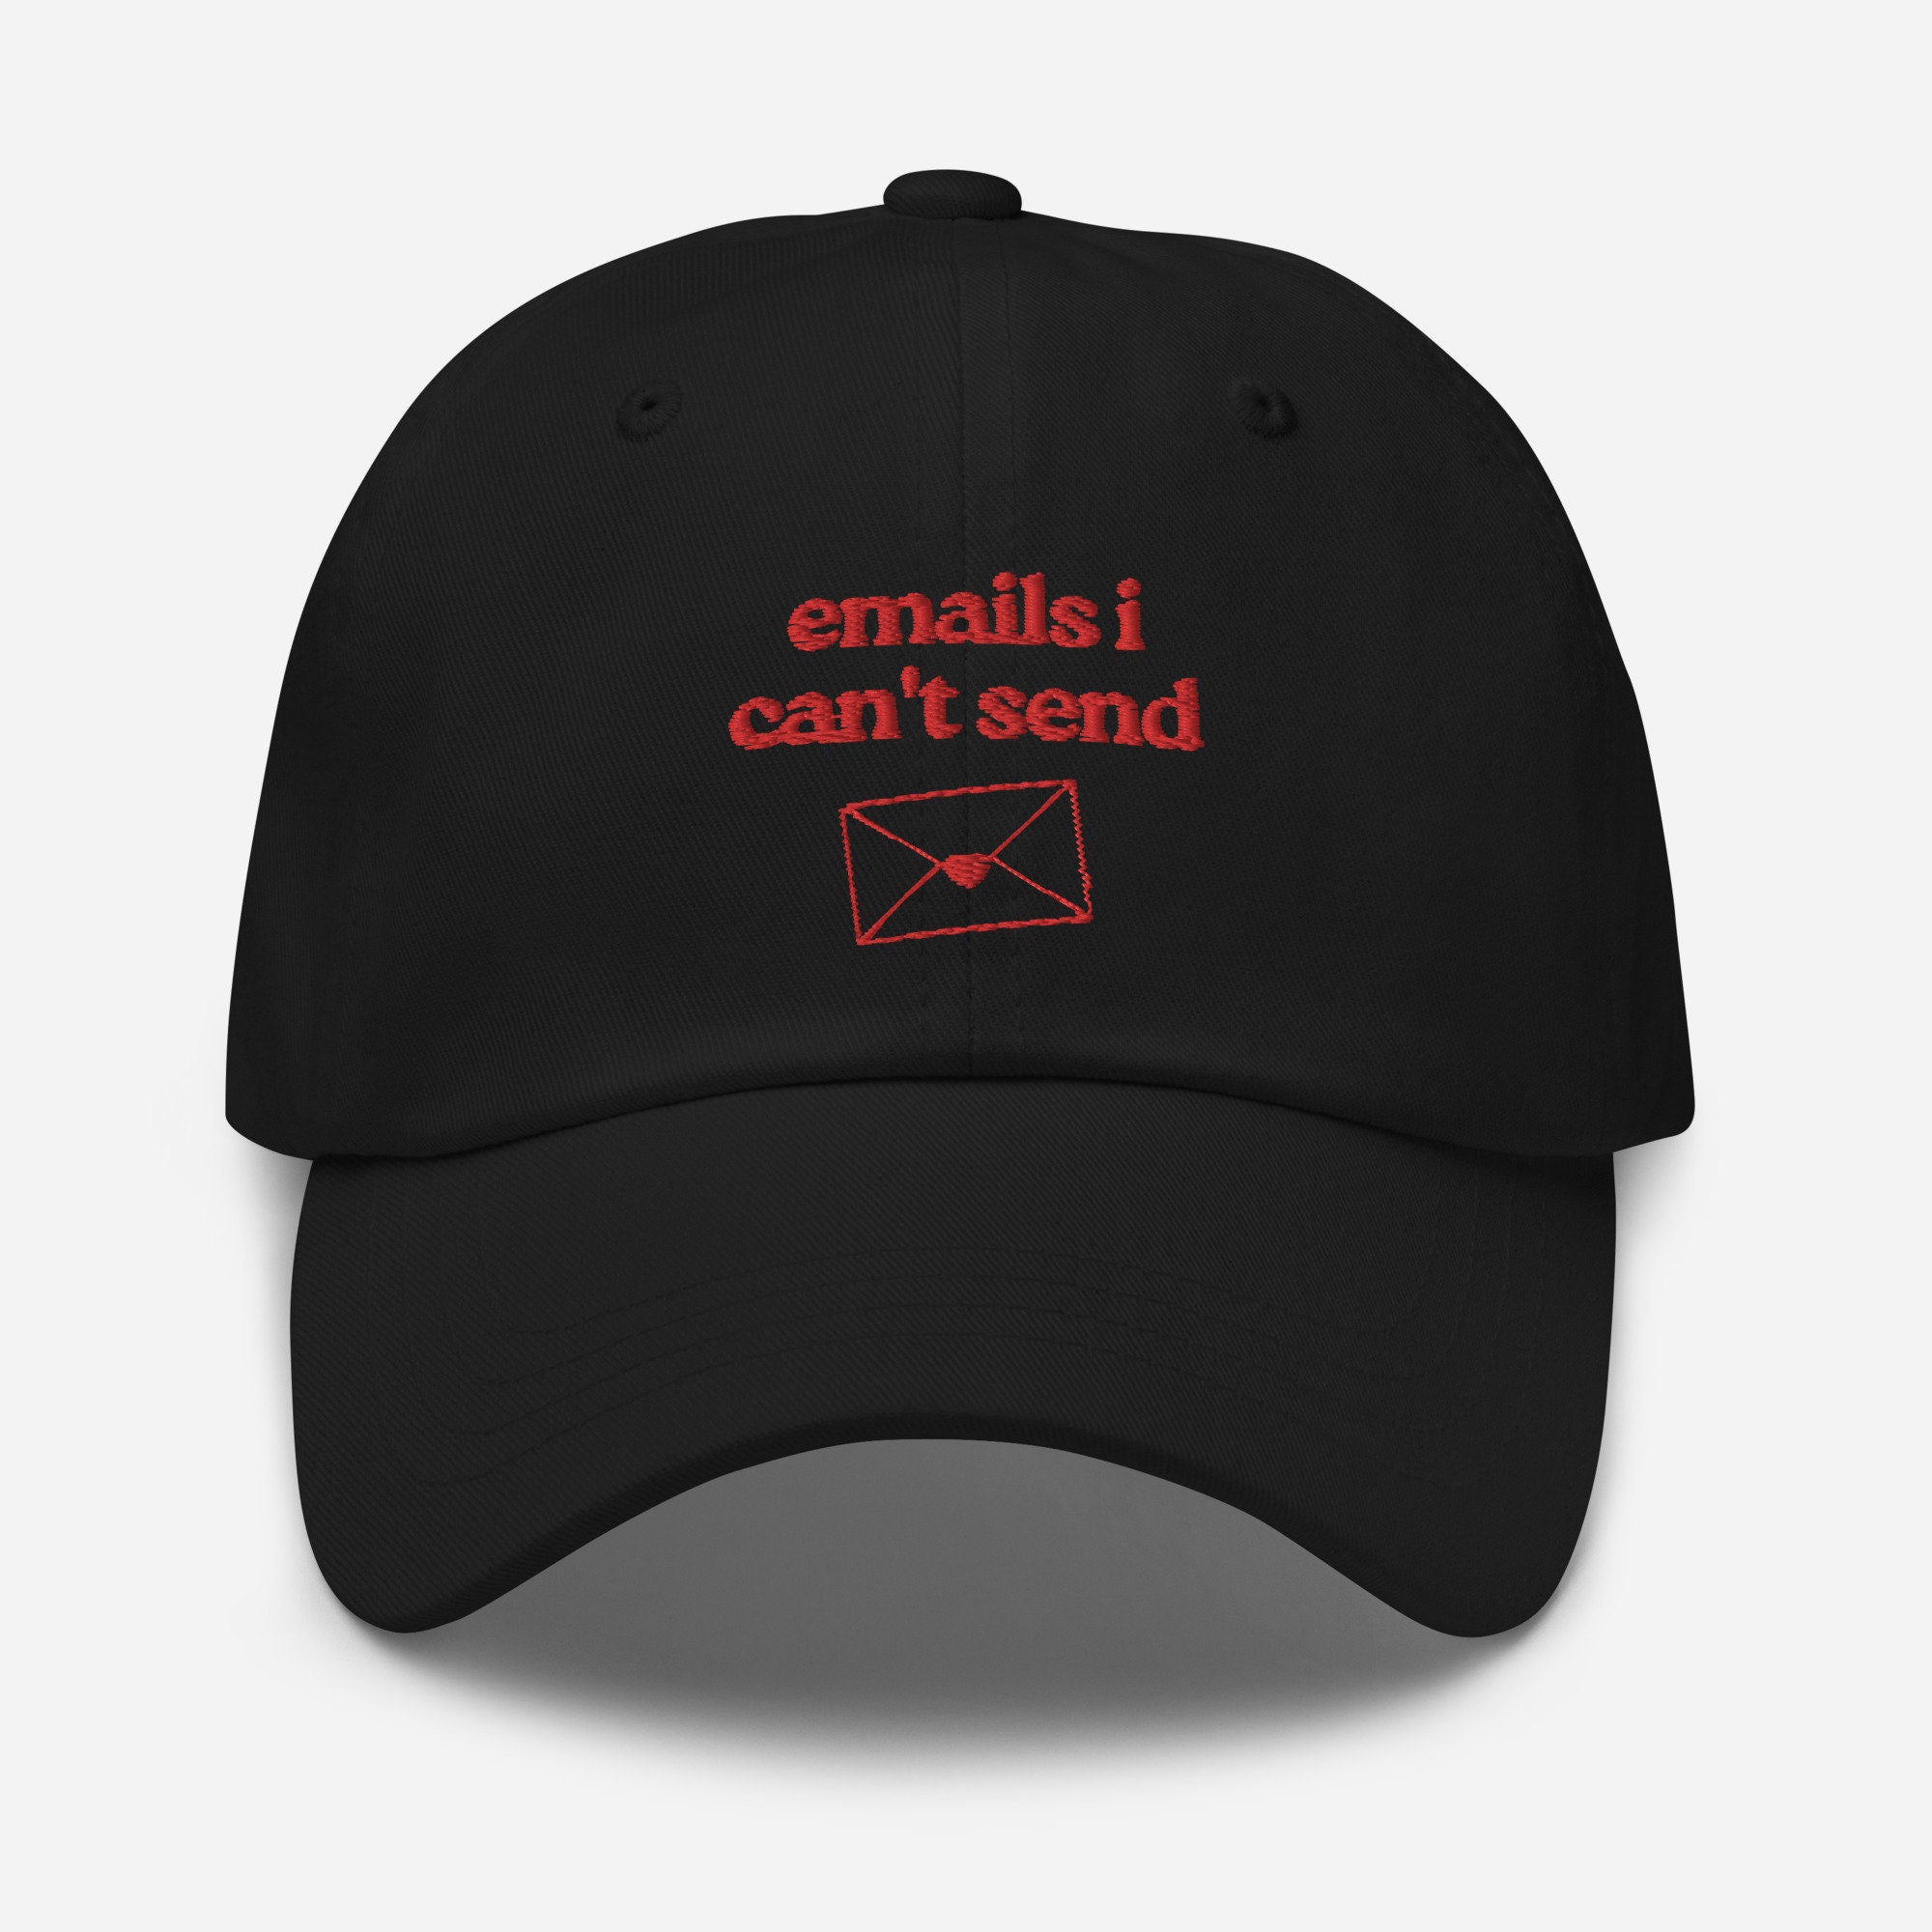 Emails I Can't Send Embroidered Dad Hat, Sabrina Carpenter - Etsy 日本